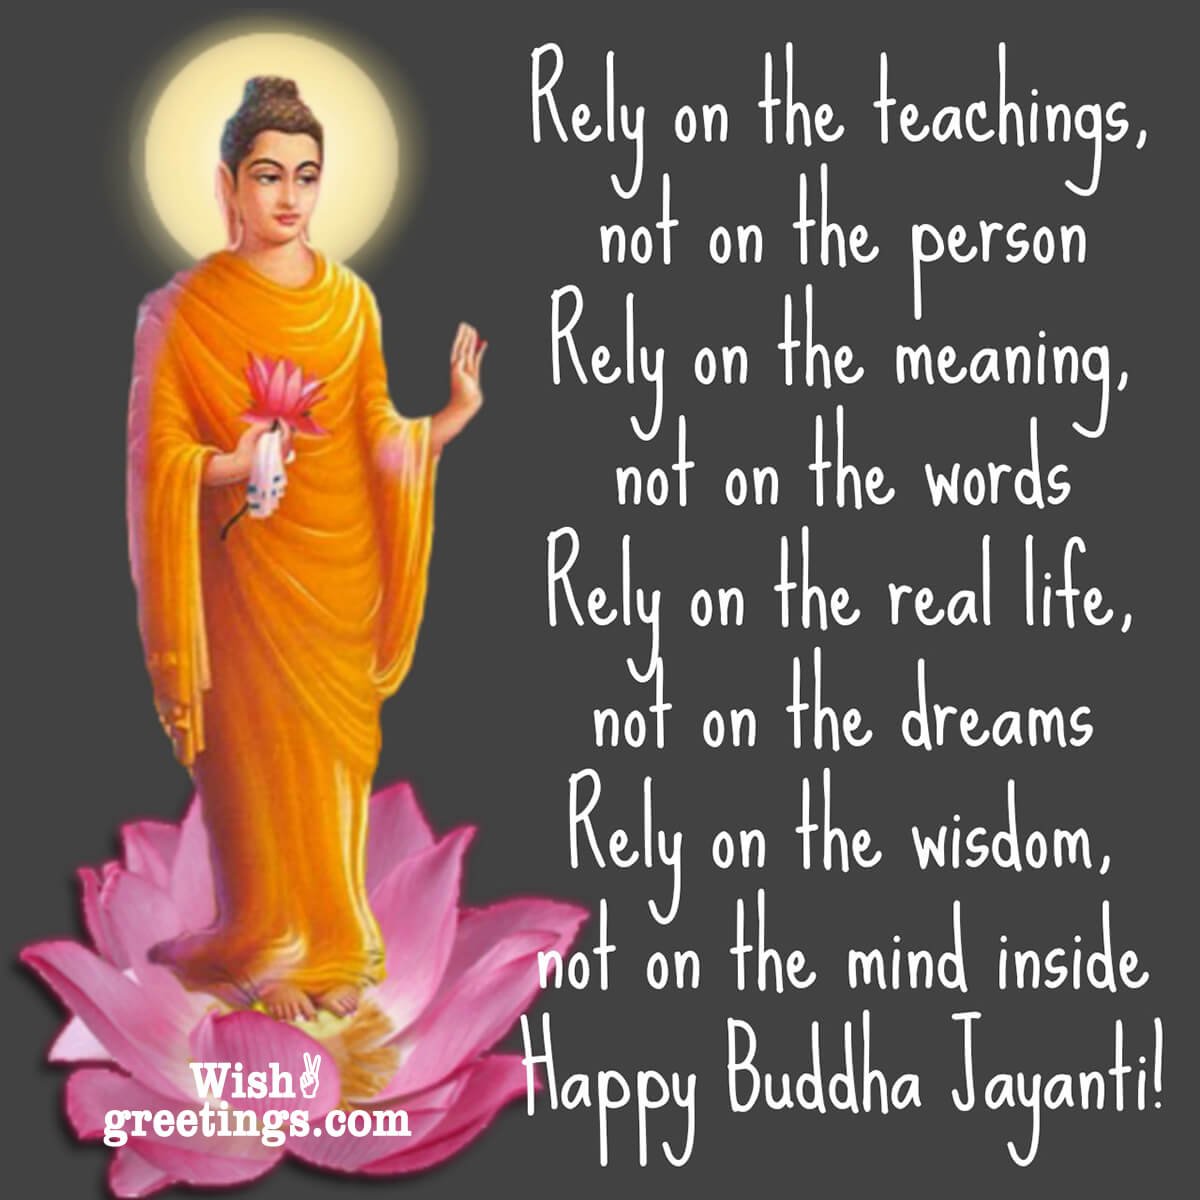 Happy Buddha Purnima Message Picture